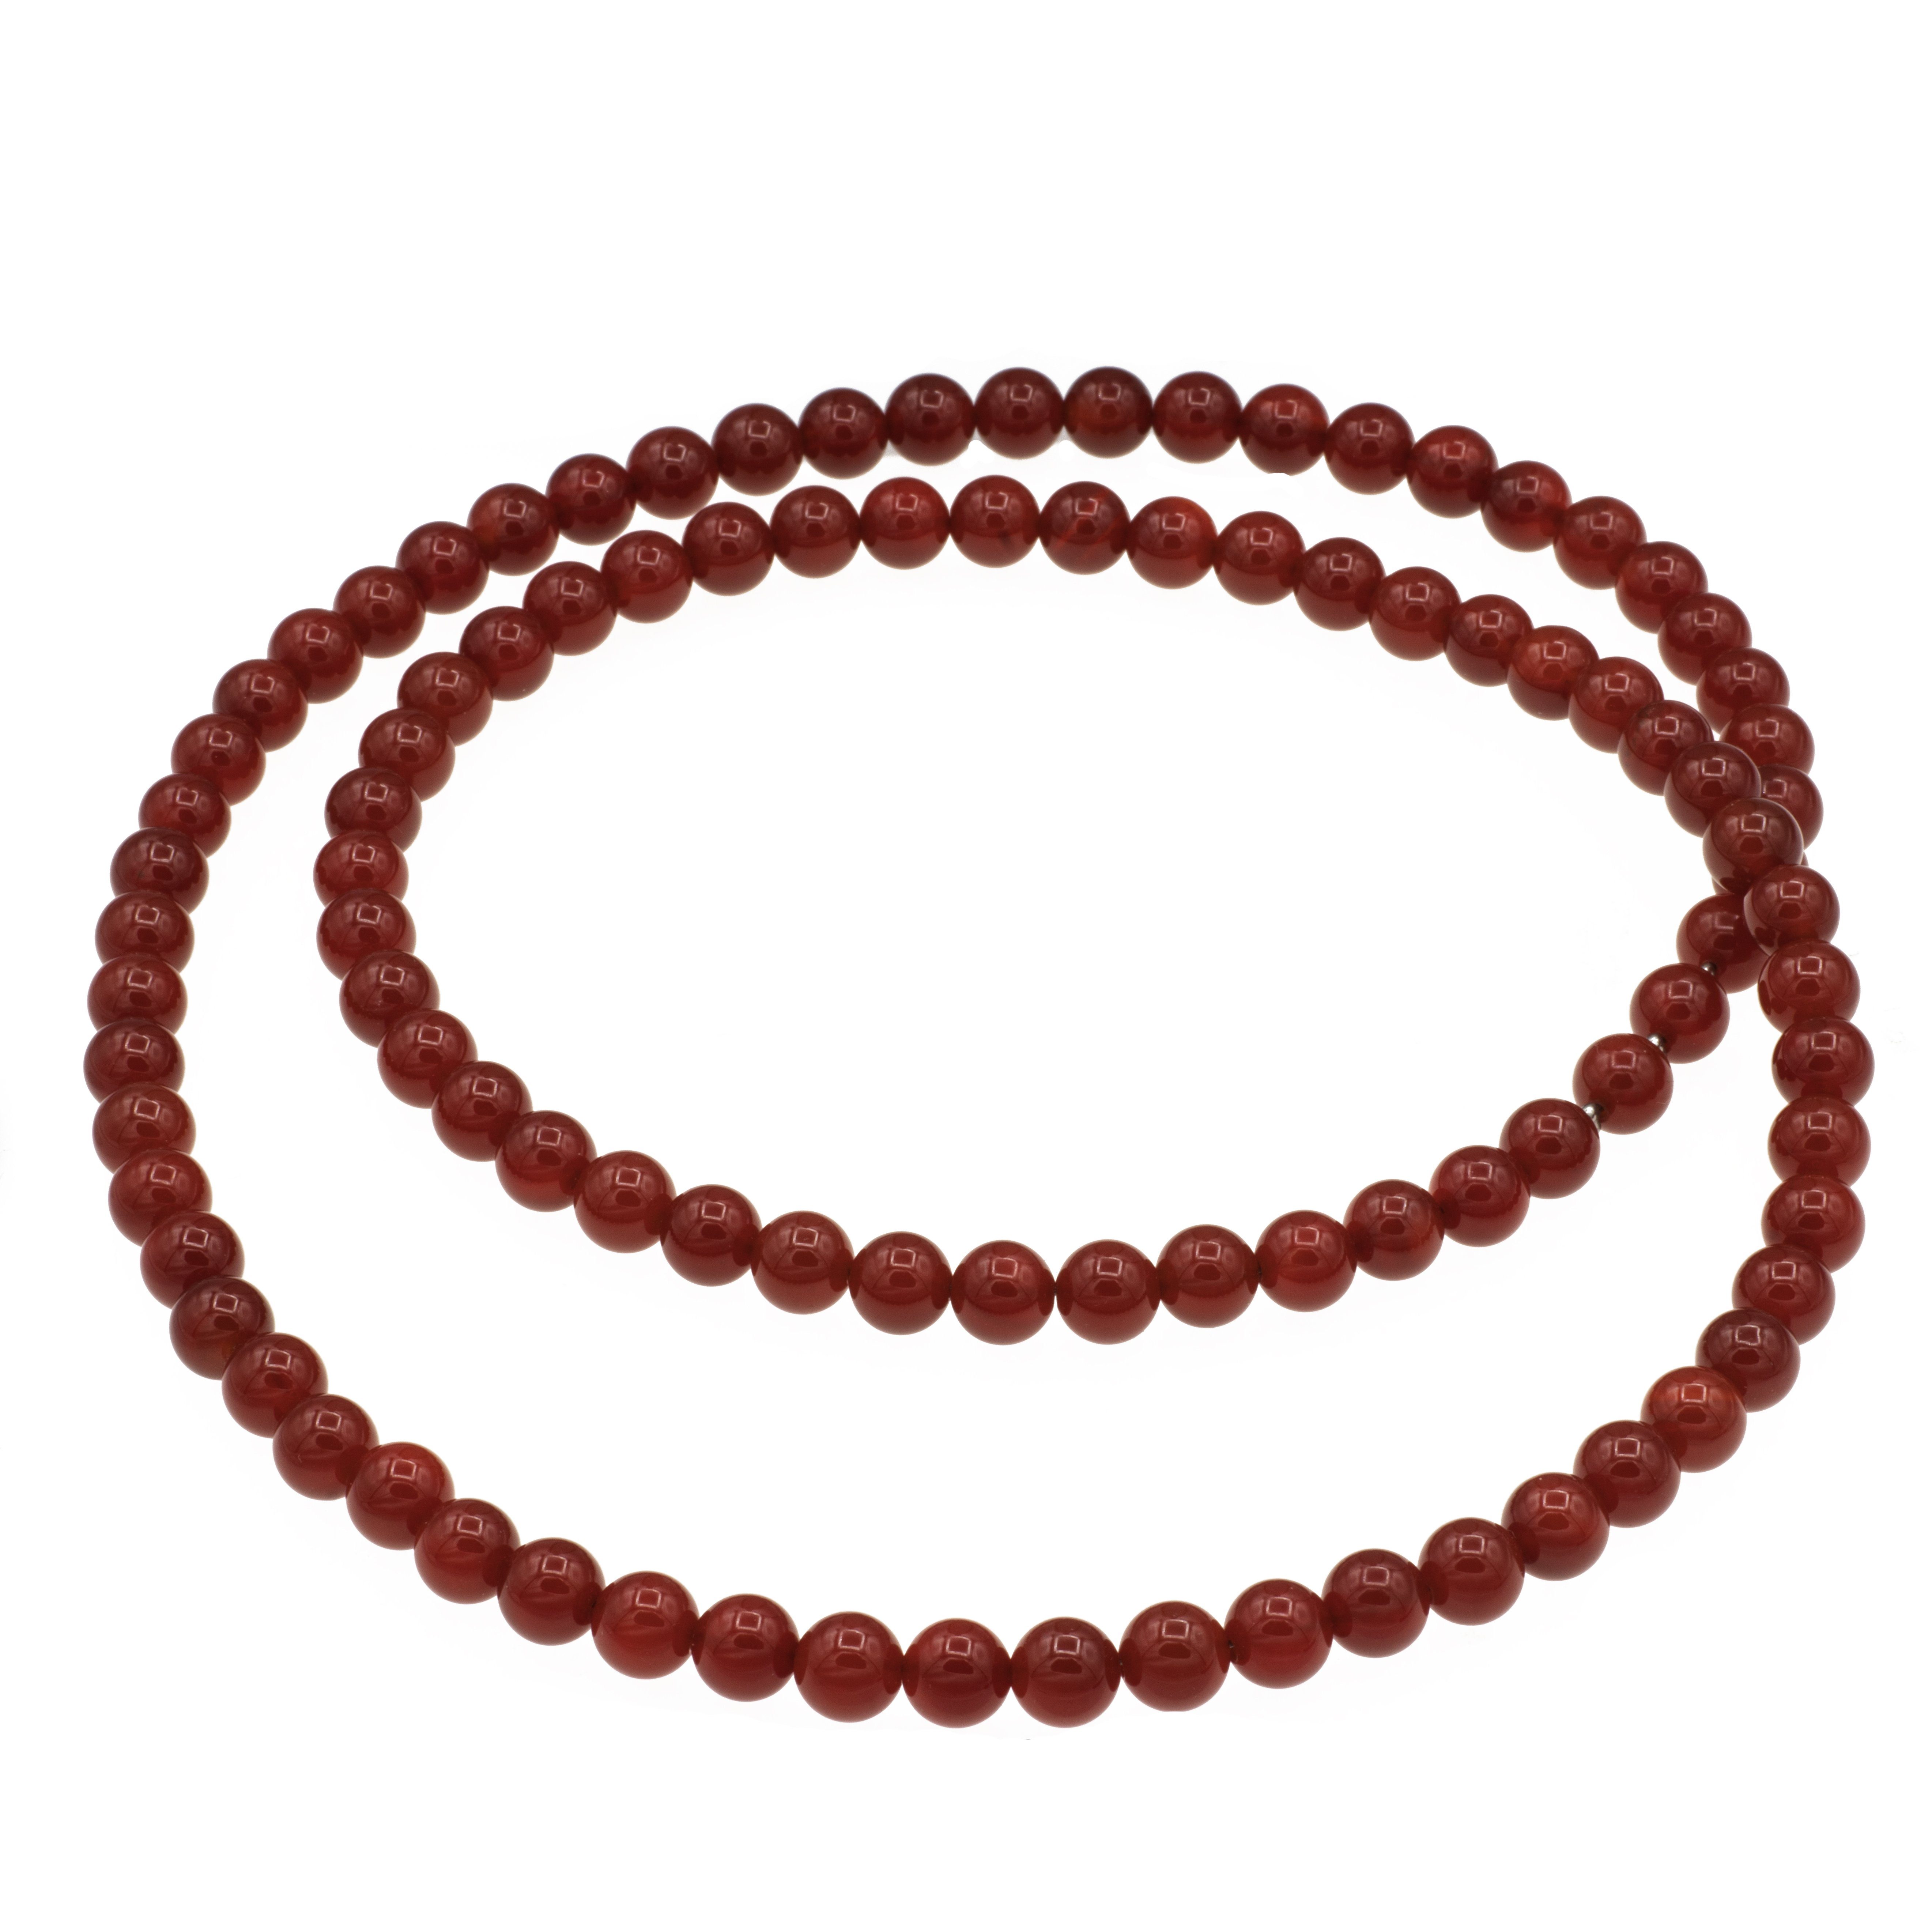 Bella Carina Perlenkette Karneol Kette 8 mm 80 cm Länge, geschlossen,  geschlossene lange Kette zum Umhängen